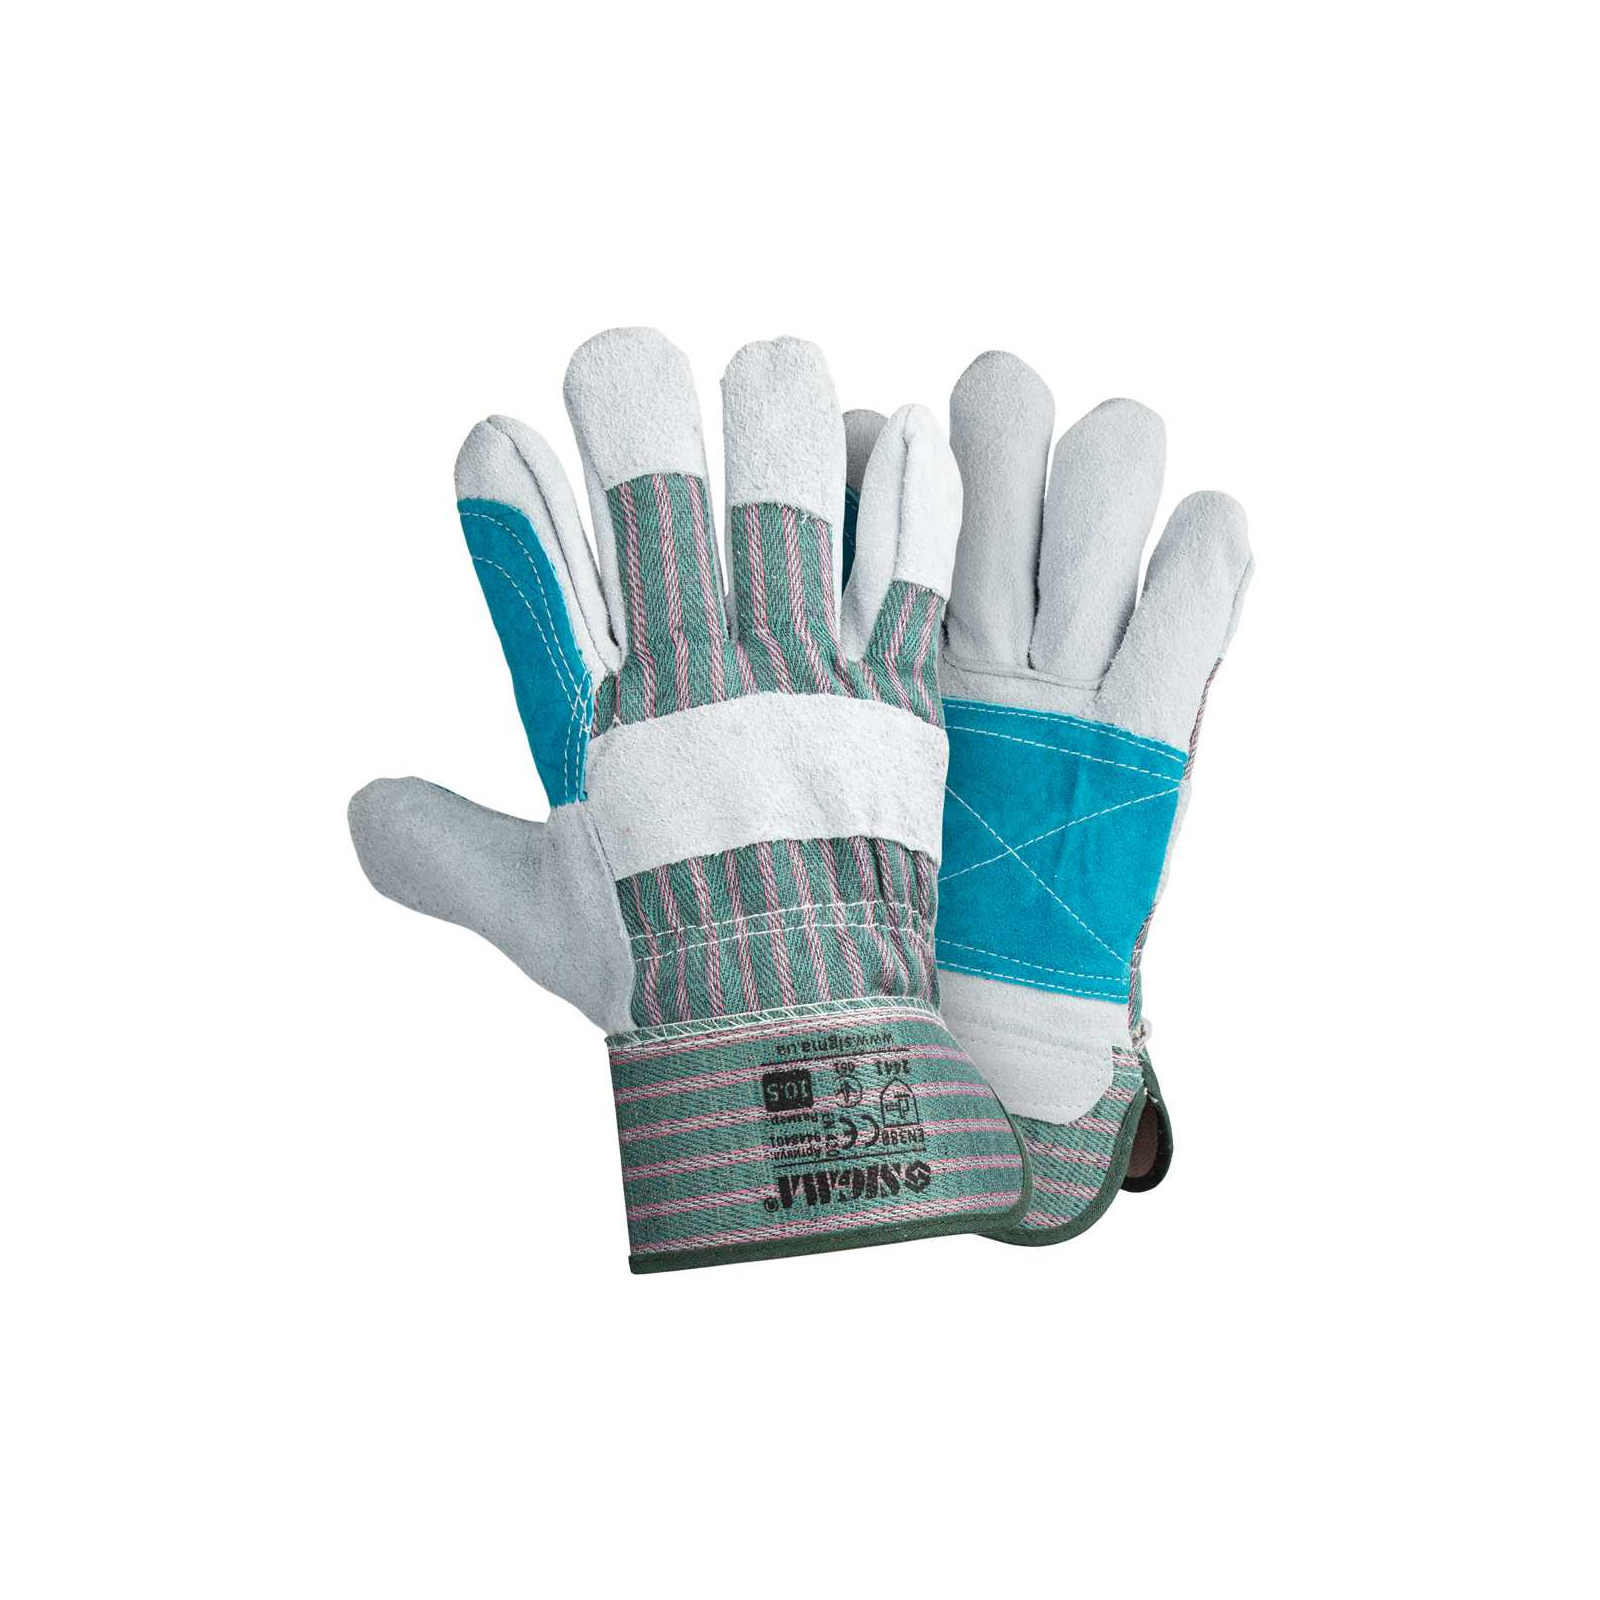 Защитные перчатки Sigma комбинированные замшевые р10.5, класс ВС (усиленная ладонь) (9448401)